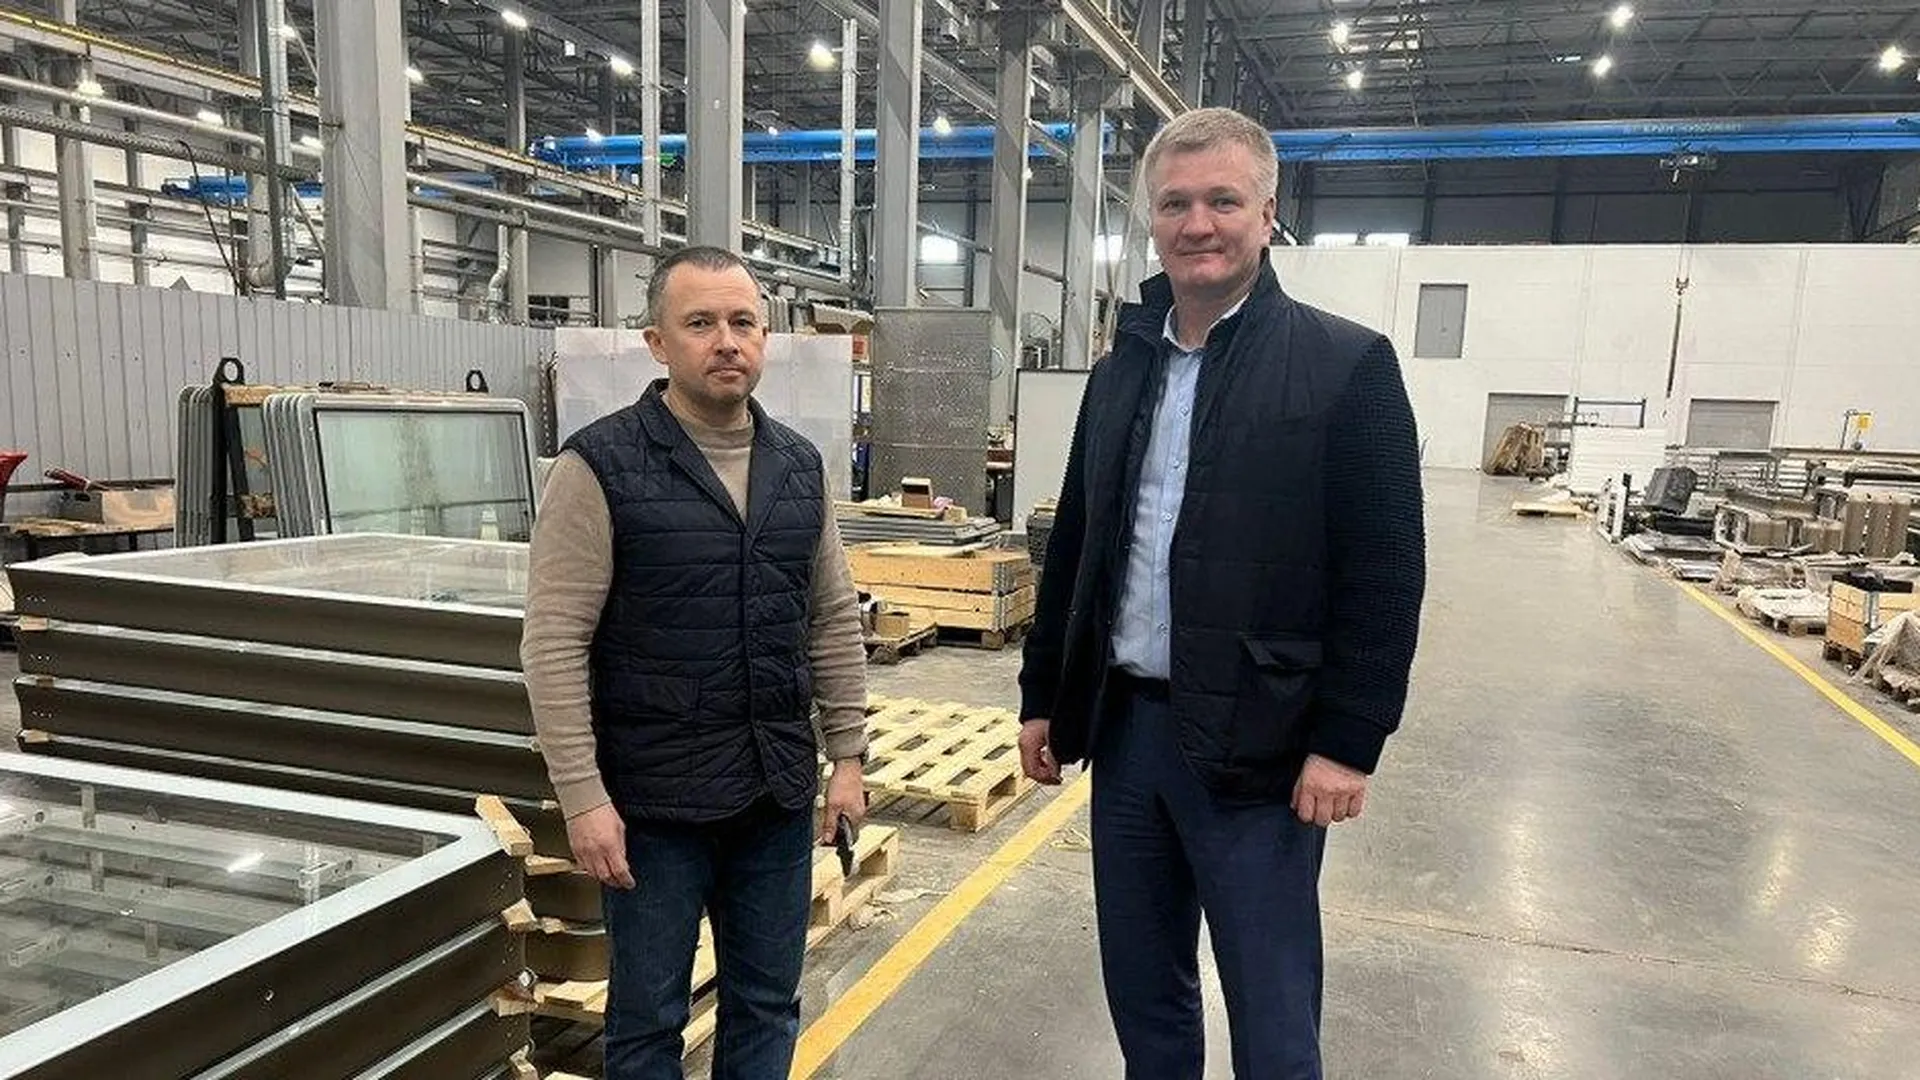 Депутат Дениско ознакомился с производством остановочных павильонов в Люберцах